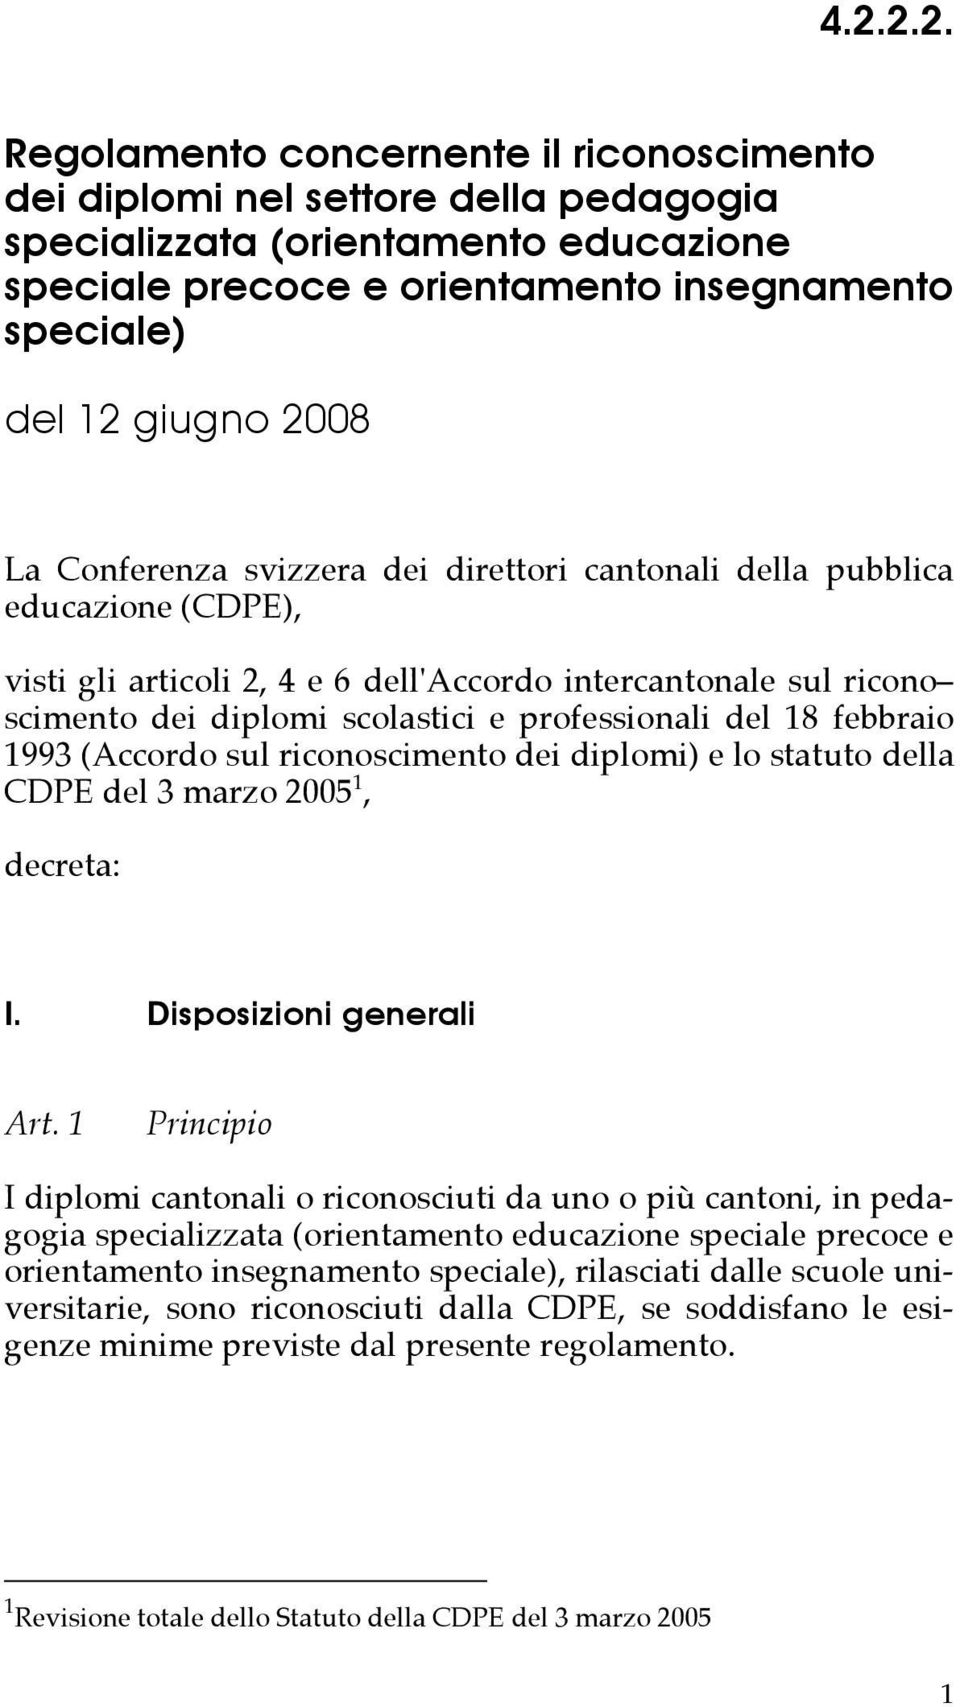 professionali del 18 febbraio 1993 (Accordo sul riconoscimento dei diplomi) e lo statuto della CDPE del 3 marzo 2005 1, decreta: I. Disposizioni generali Art.